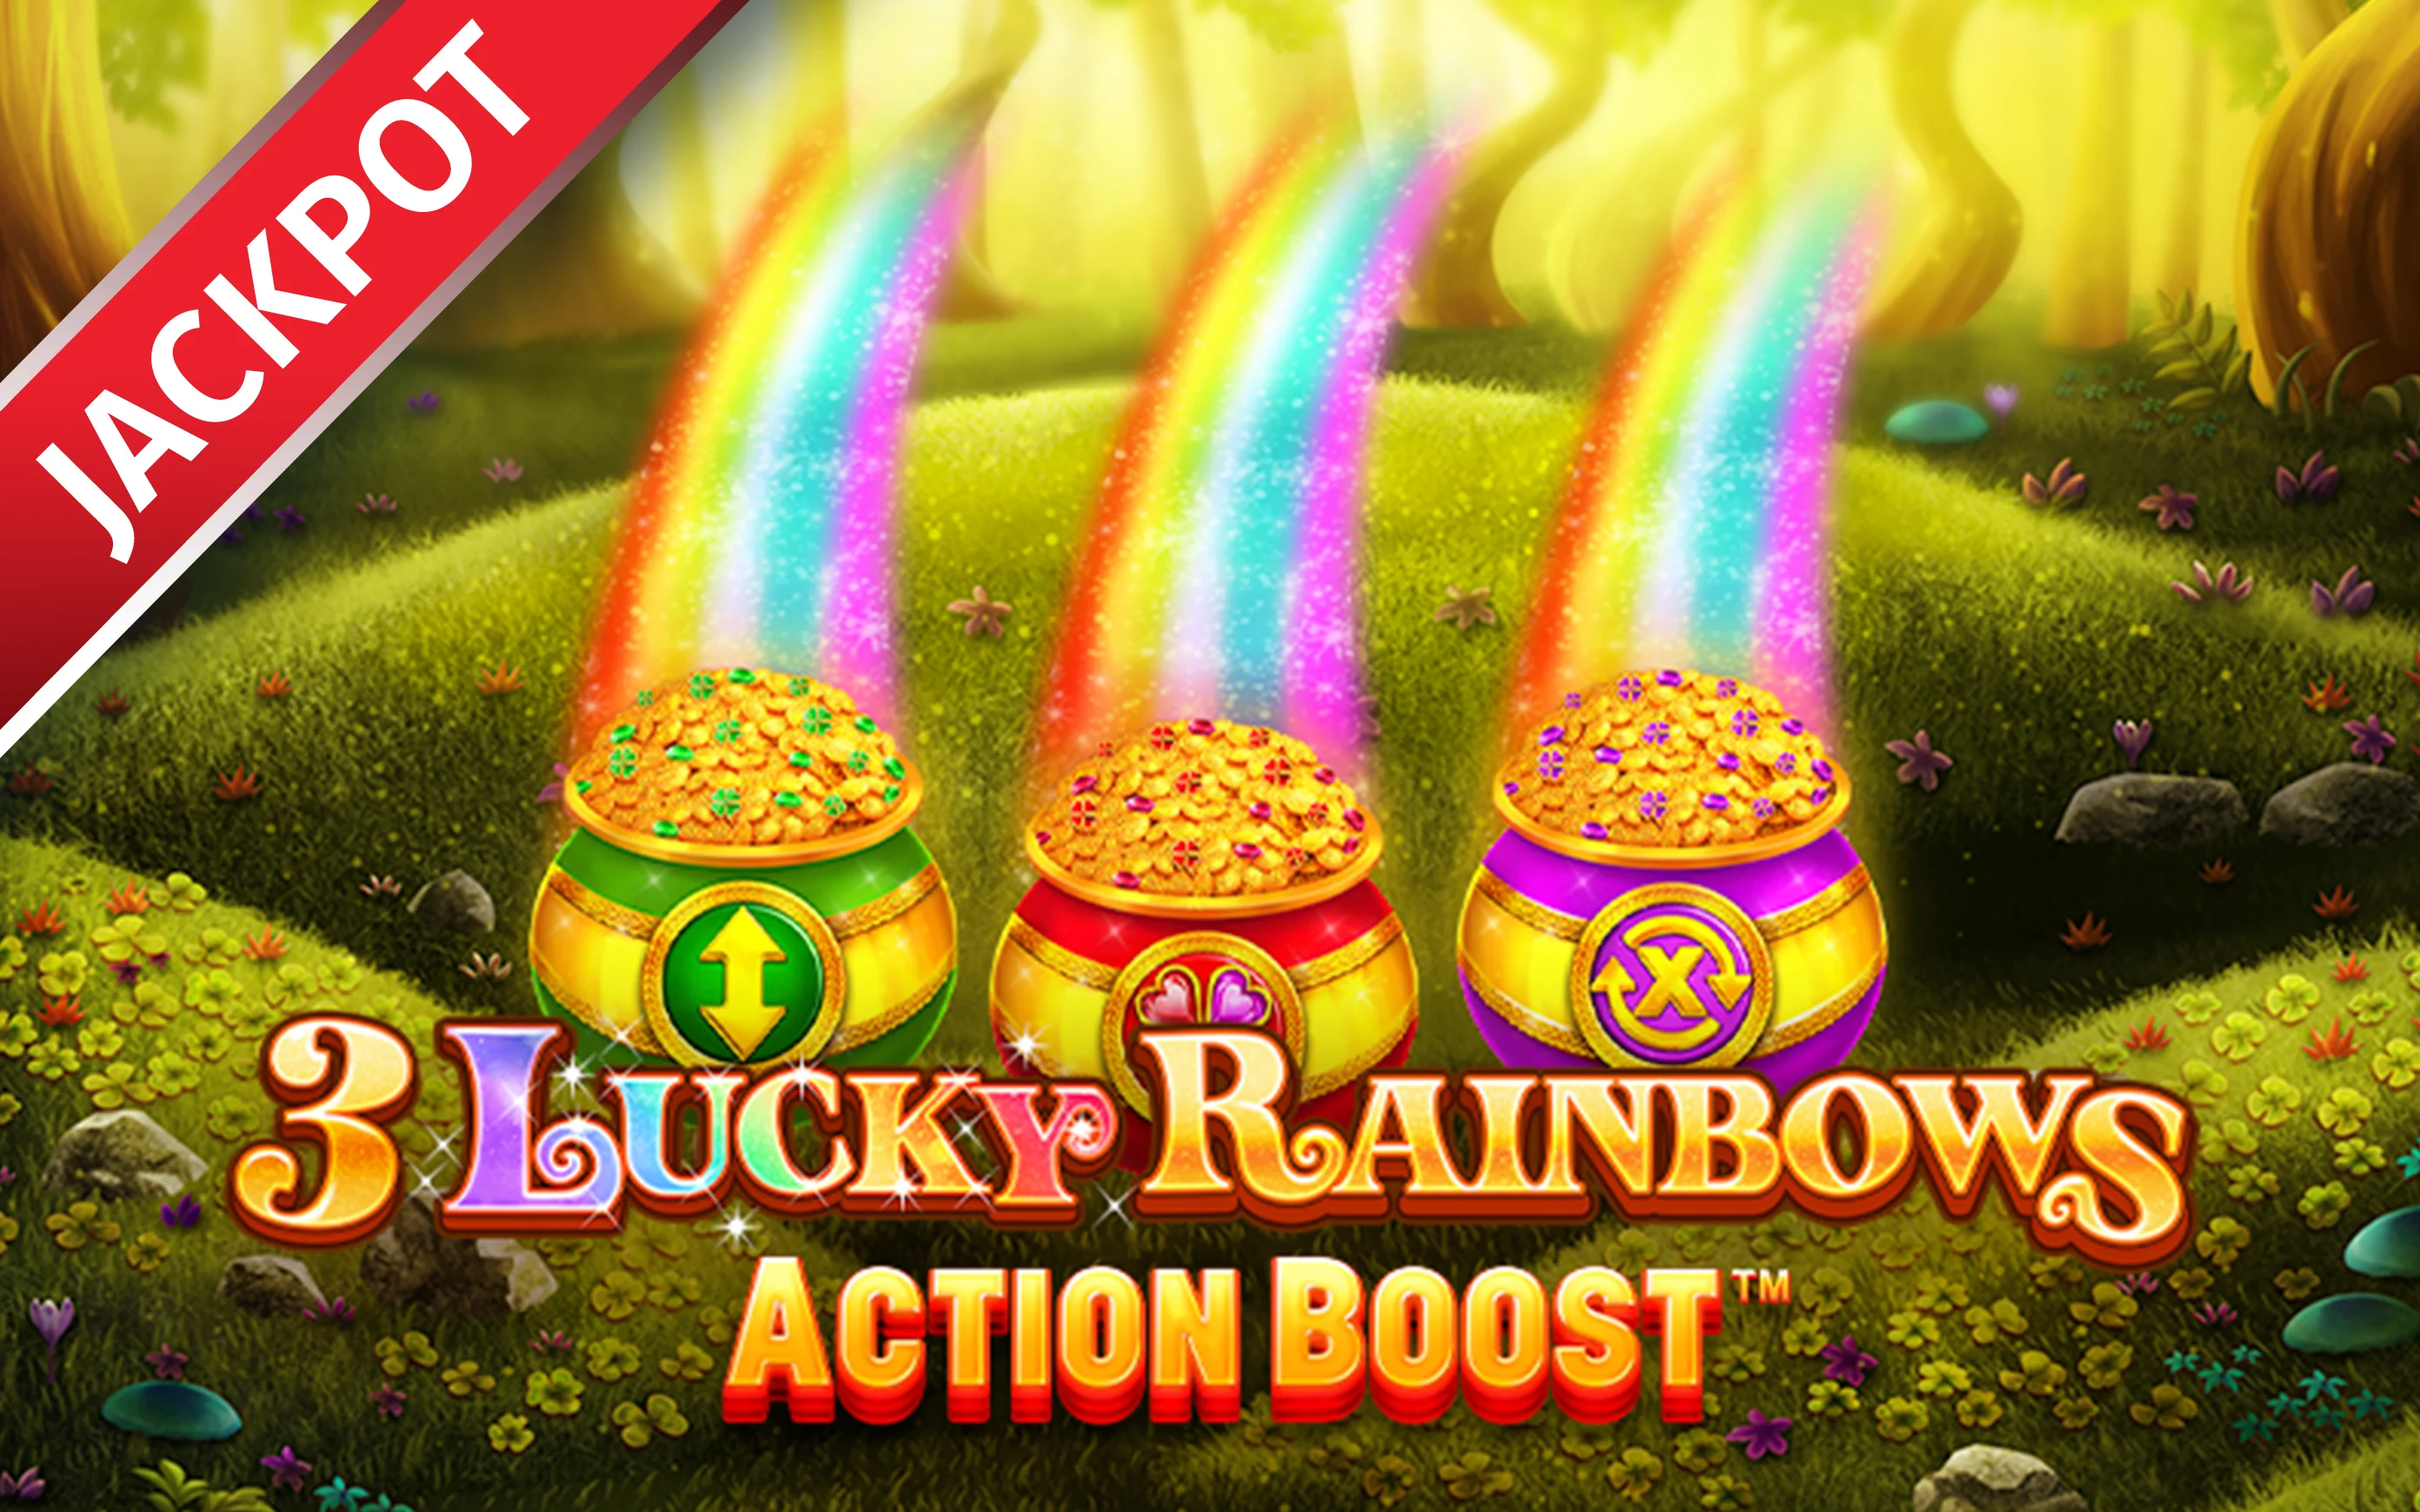 Παίξτε Action Boost ™ 3 Lucky Rainbows στο online καζίνο Starcasino.be